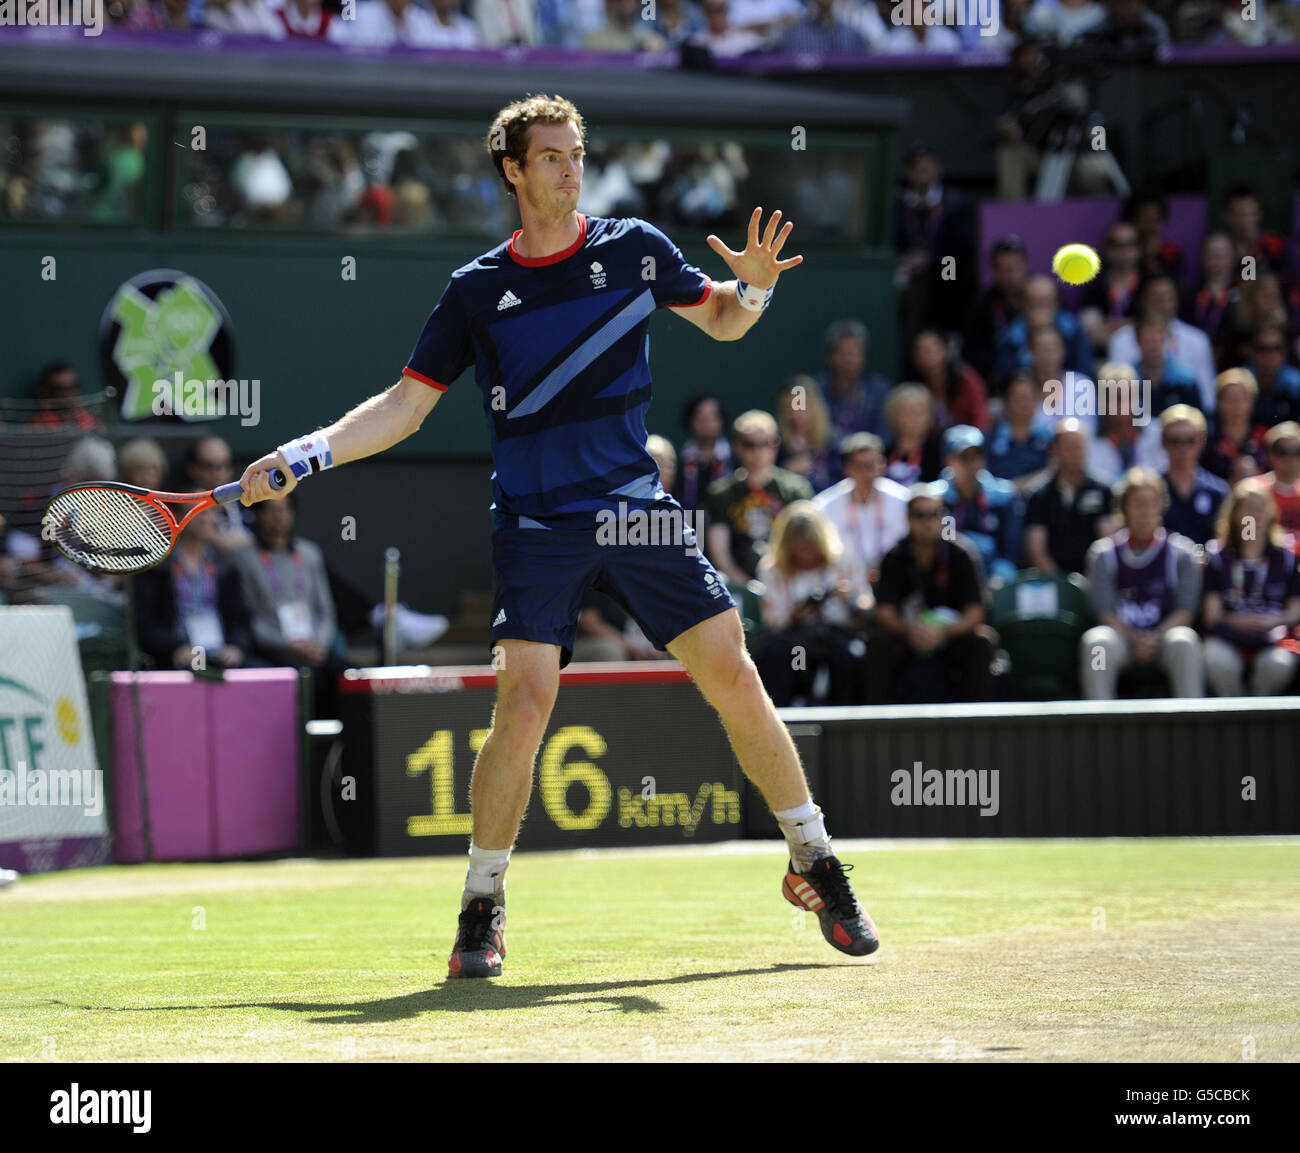 Giochi Olimpici di Londra - giorno 9. Andy Murray della Gran Bretagna in azione durante la partita Men's Singles presso l'Olympic Tennis Venue di Wimbledon. Foto Stock